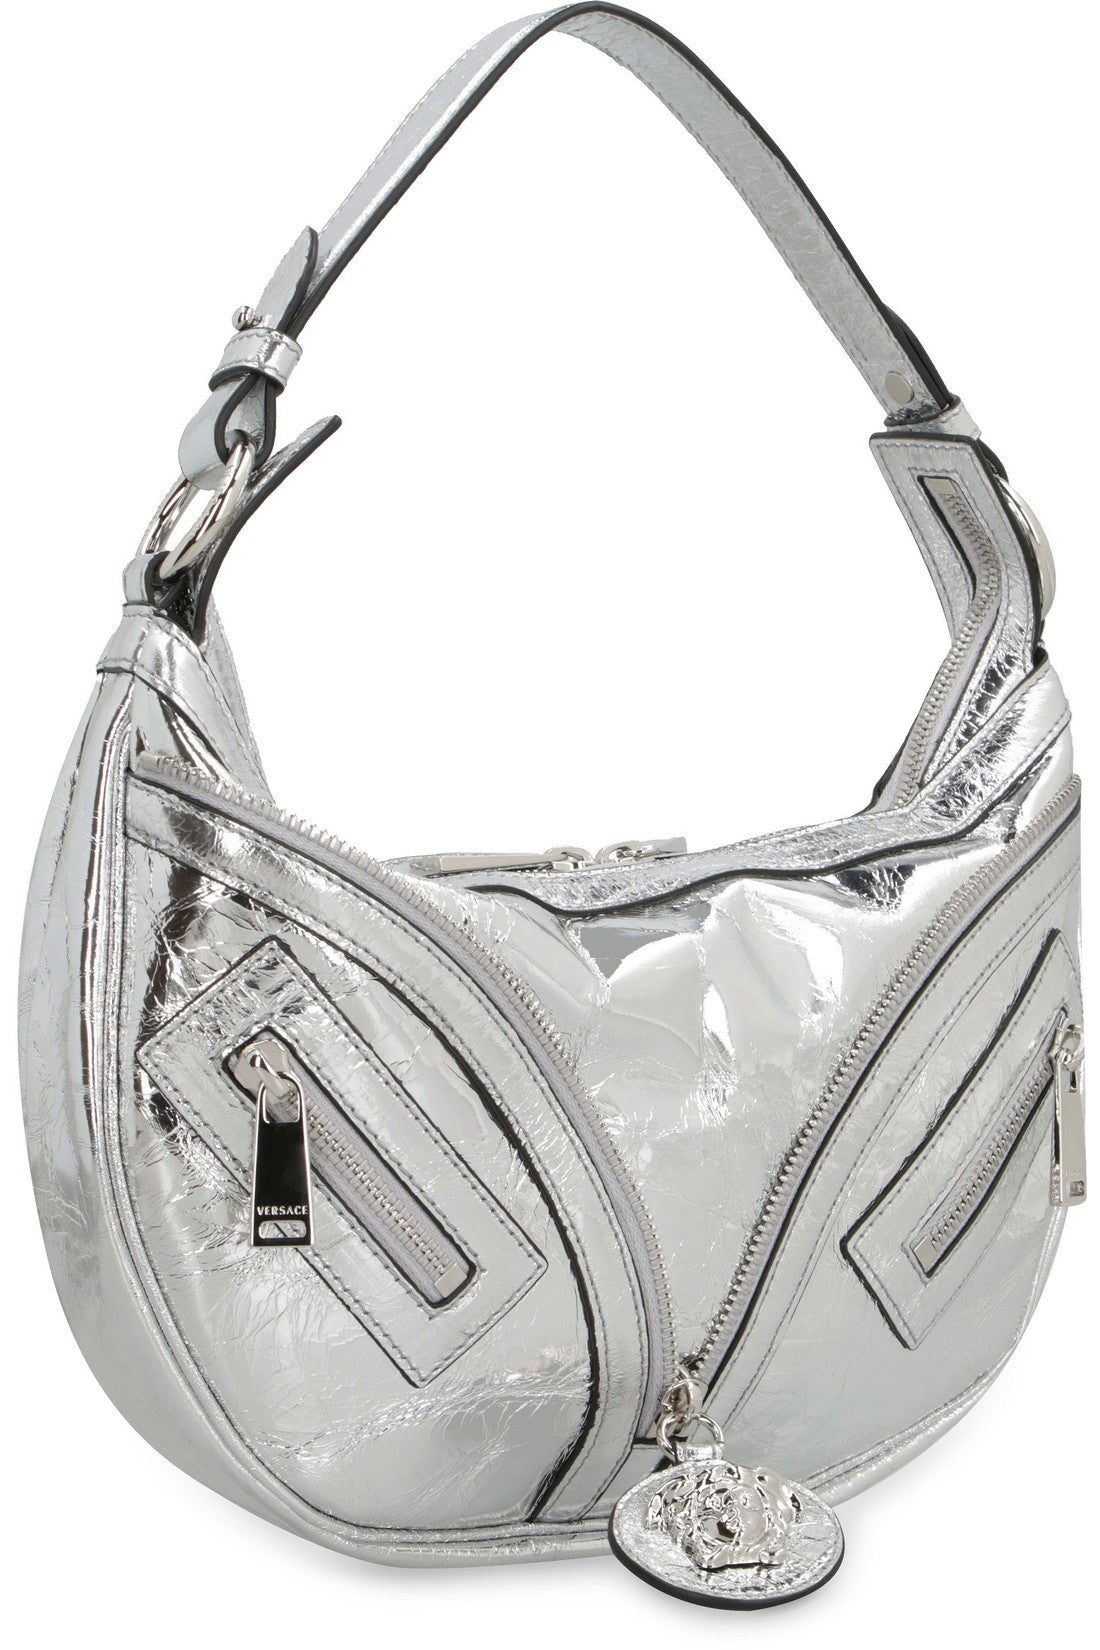 Versace-OUTLET-SALE-Repeat leather shoulder bag-ARCHIVIST